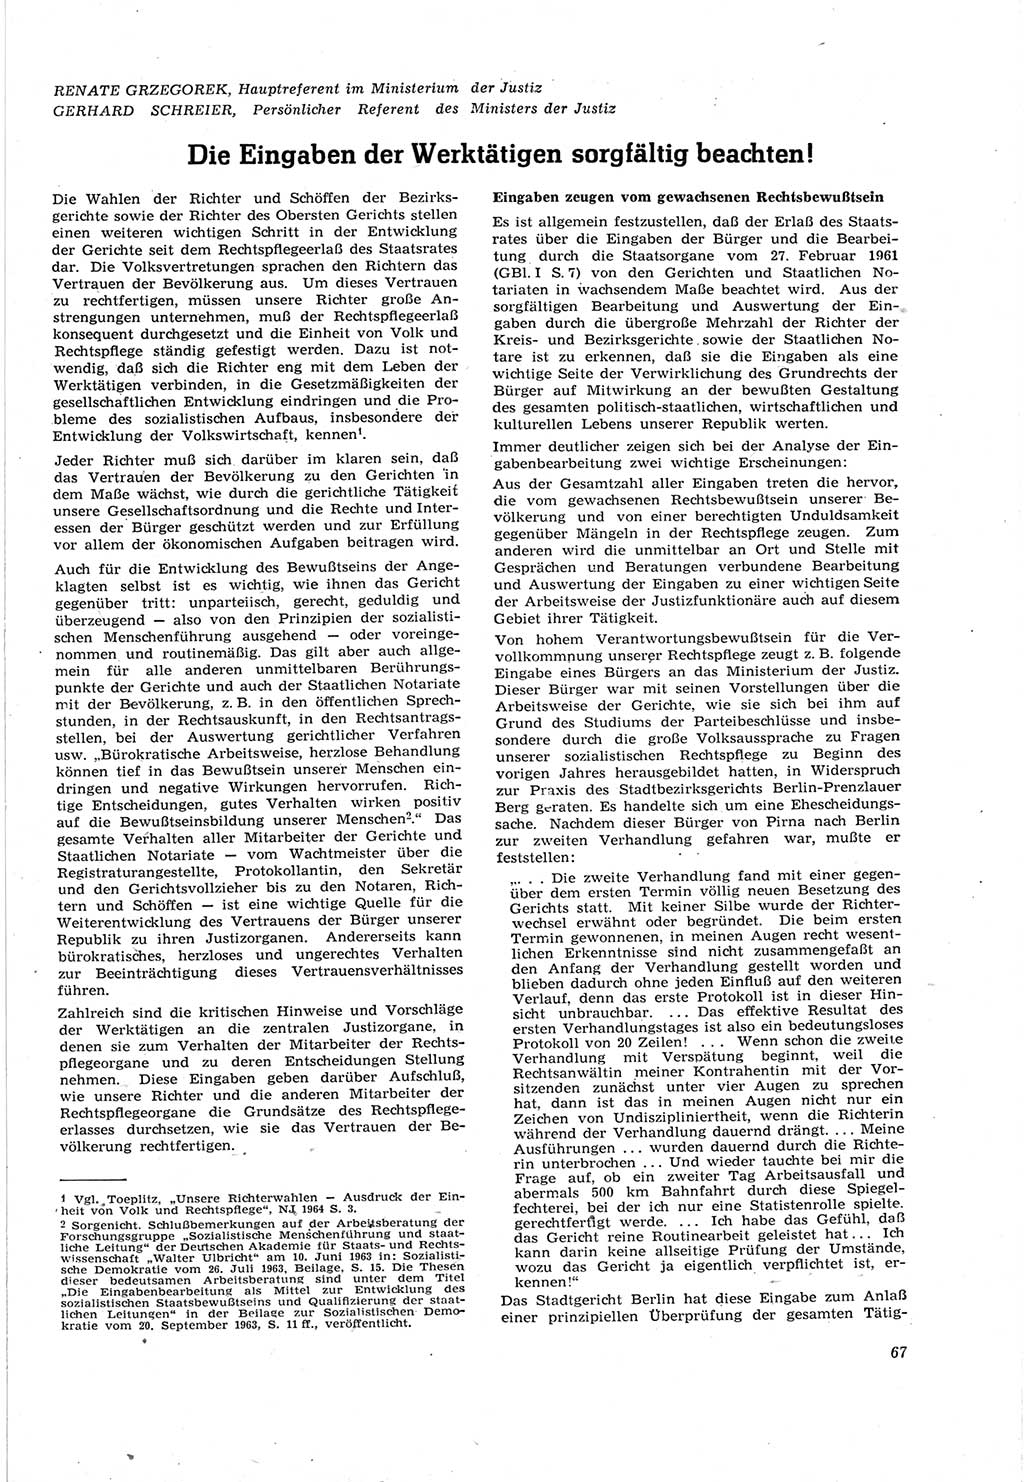 Neue Justiz (NJ), Zeitschrift für Recht und Rechtswissenschaft [Deutsche Demokratische Republik (DDR)], 18. Jahrgang 1964, Seite 67 (NJ DDR 1964, S. 67)